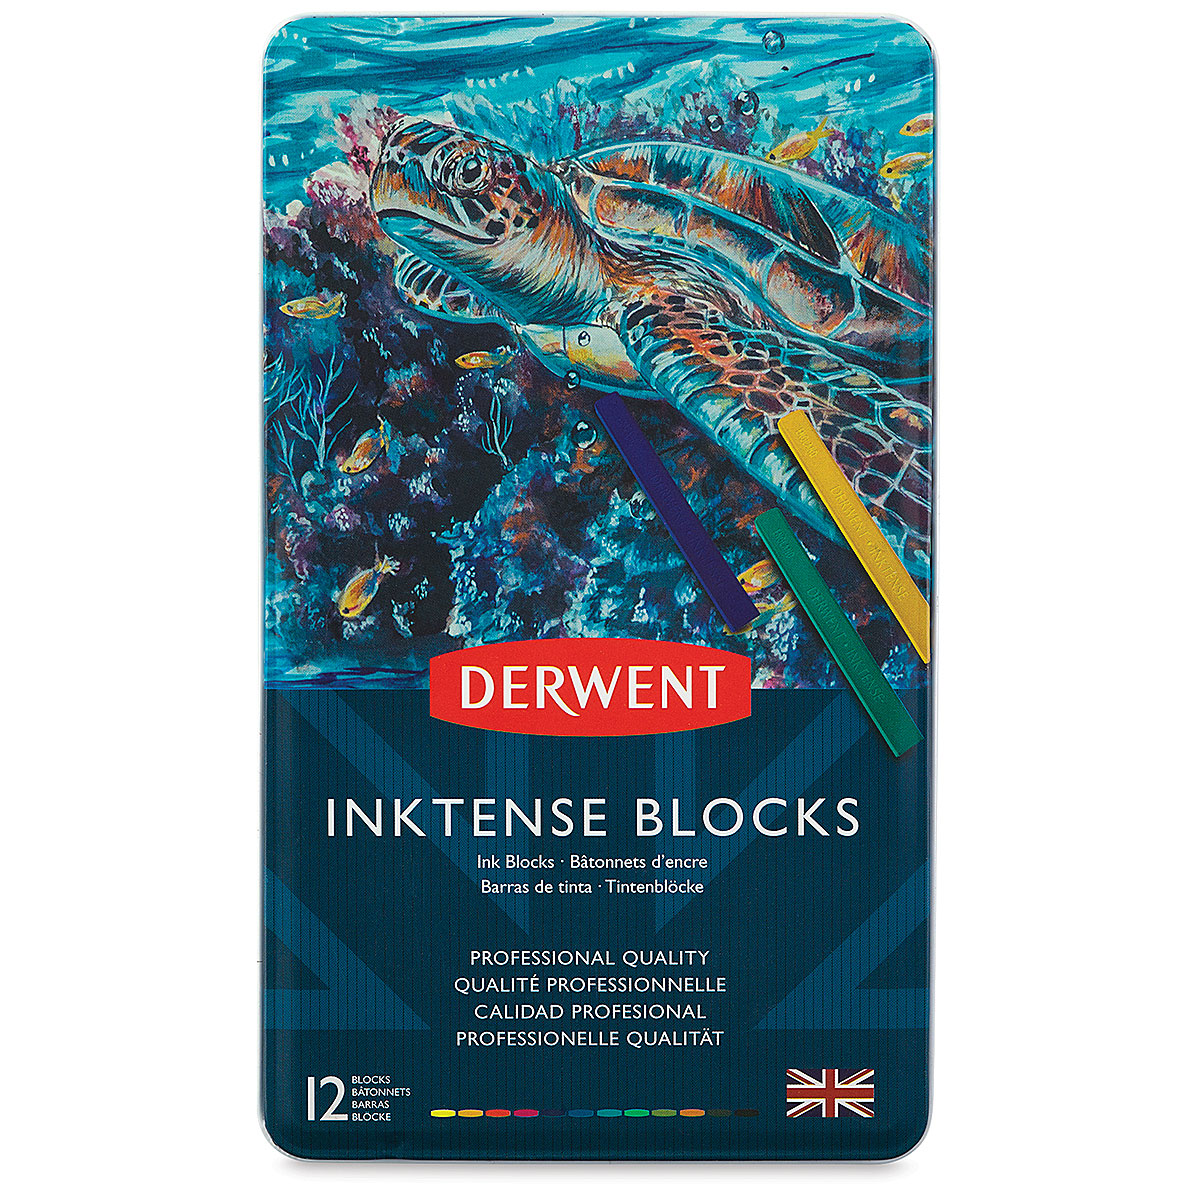 Derwent Inktense Blocks and Sets